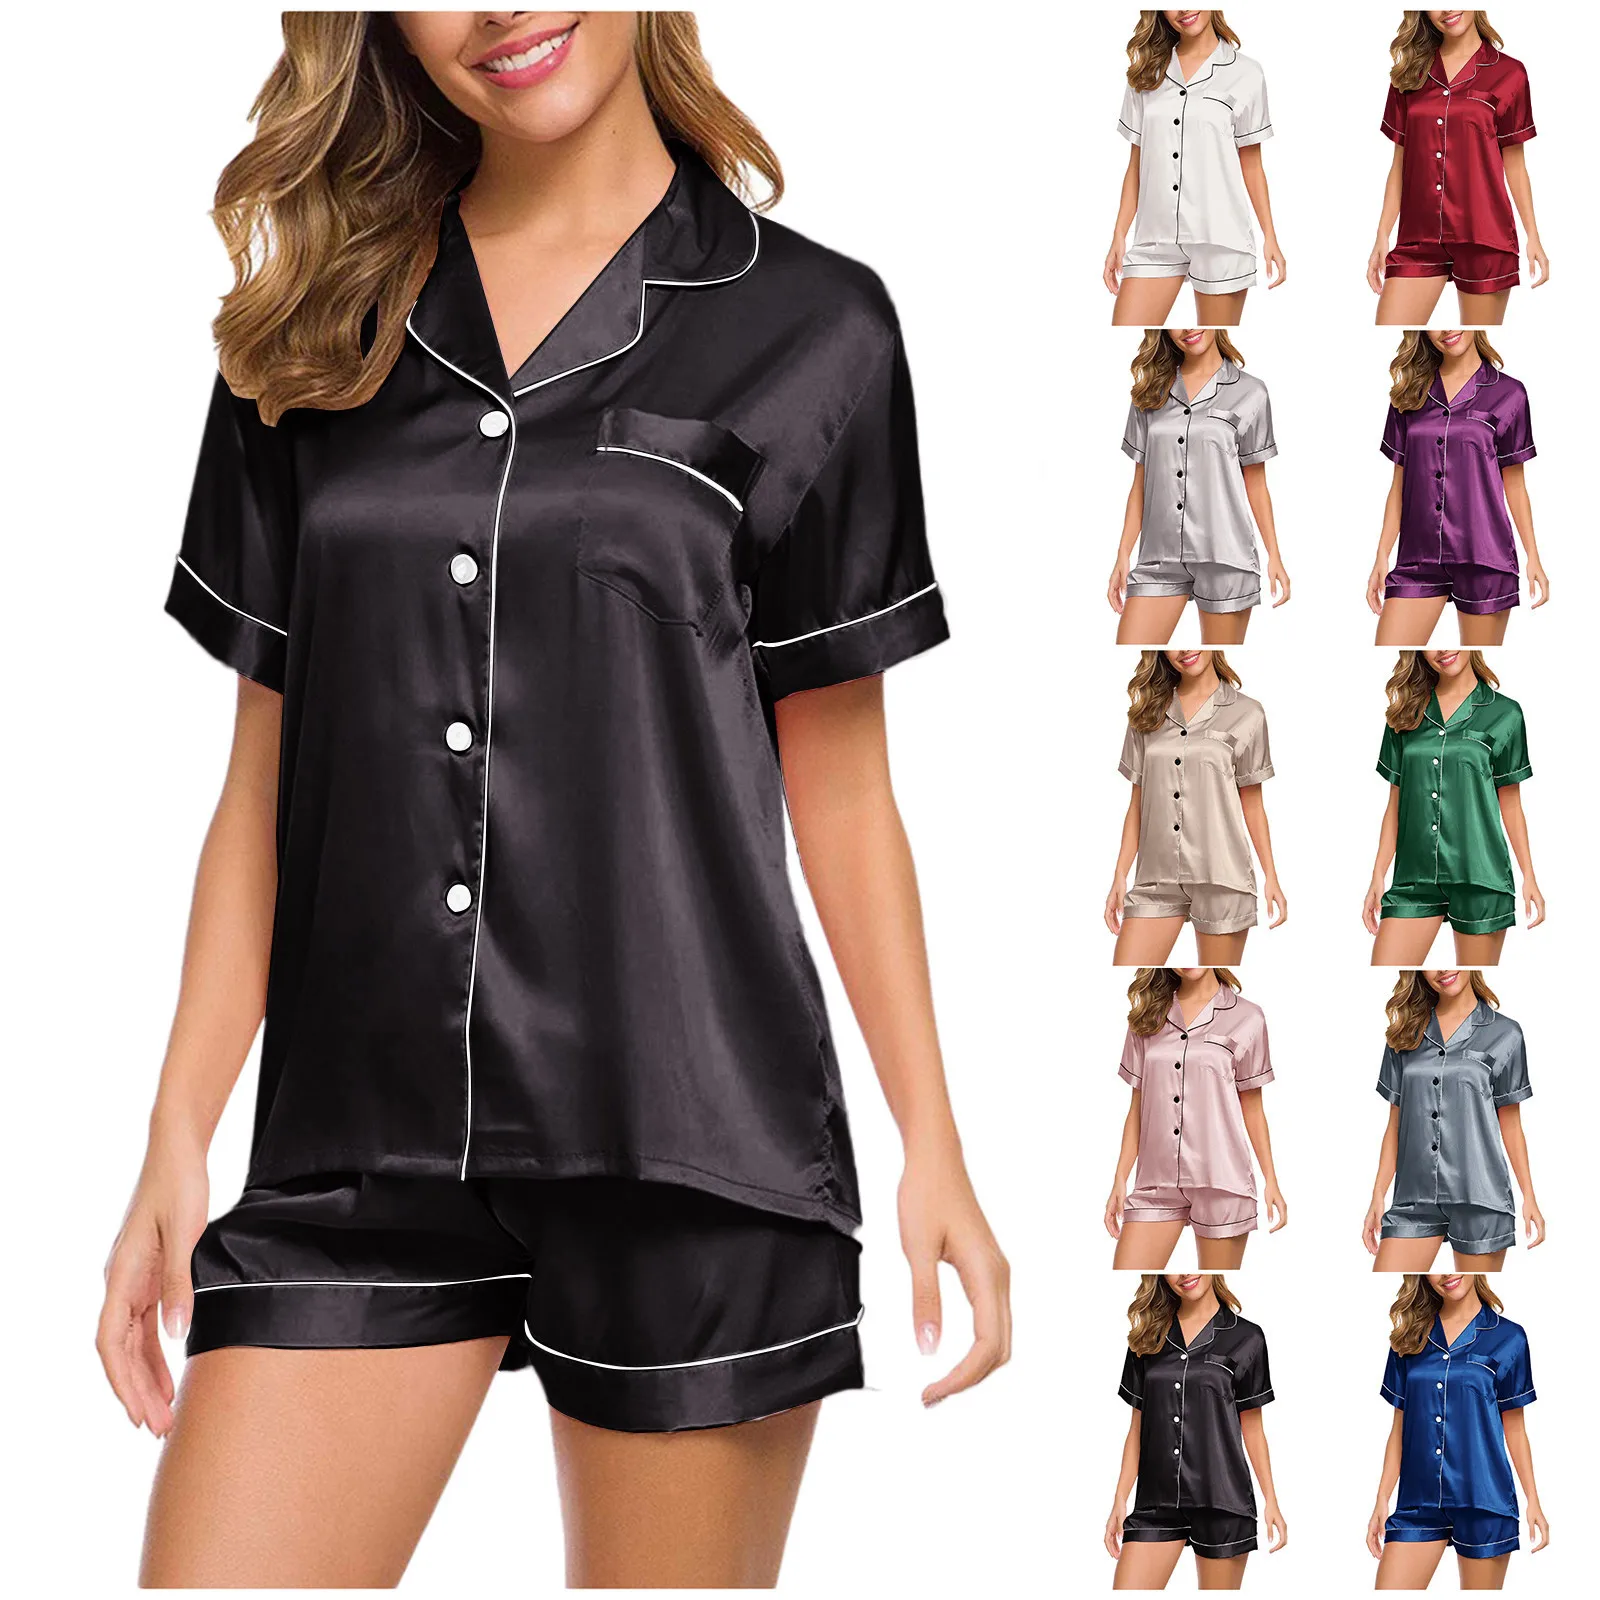 

Silk Pajamas for Women Home Suit Short Sleeve Shirt + Shorts Pyjamas Set Satin Nightwear Sleepwear Nightgown Pijama Verano Mujer